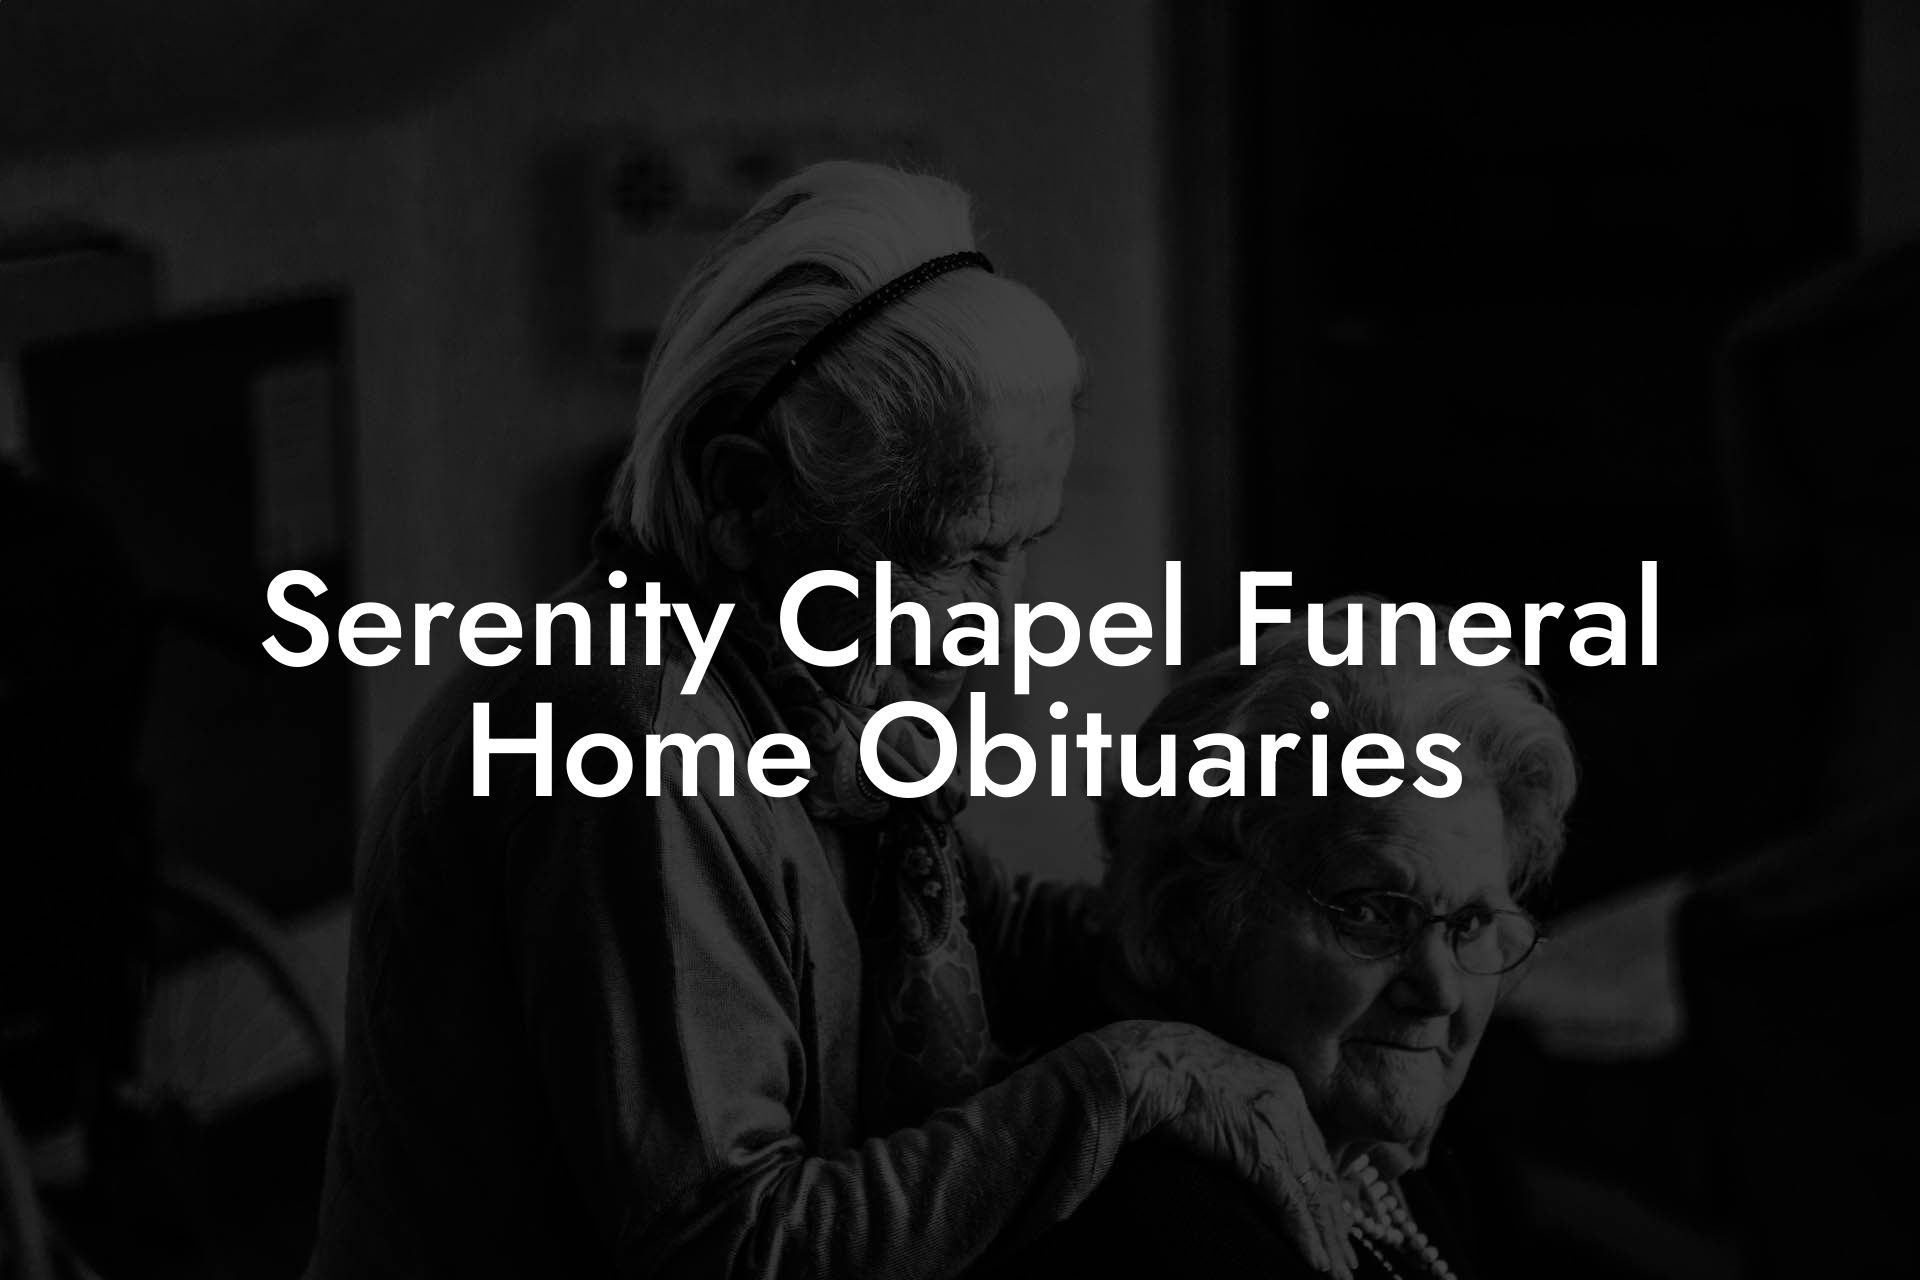 Serenity Chapel Funeral Home Obituaries